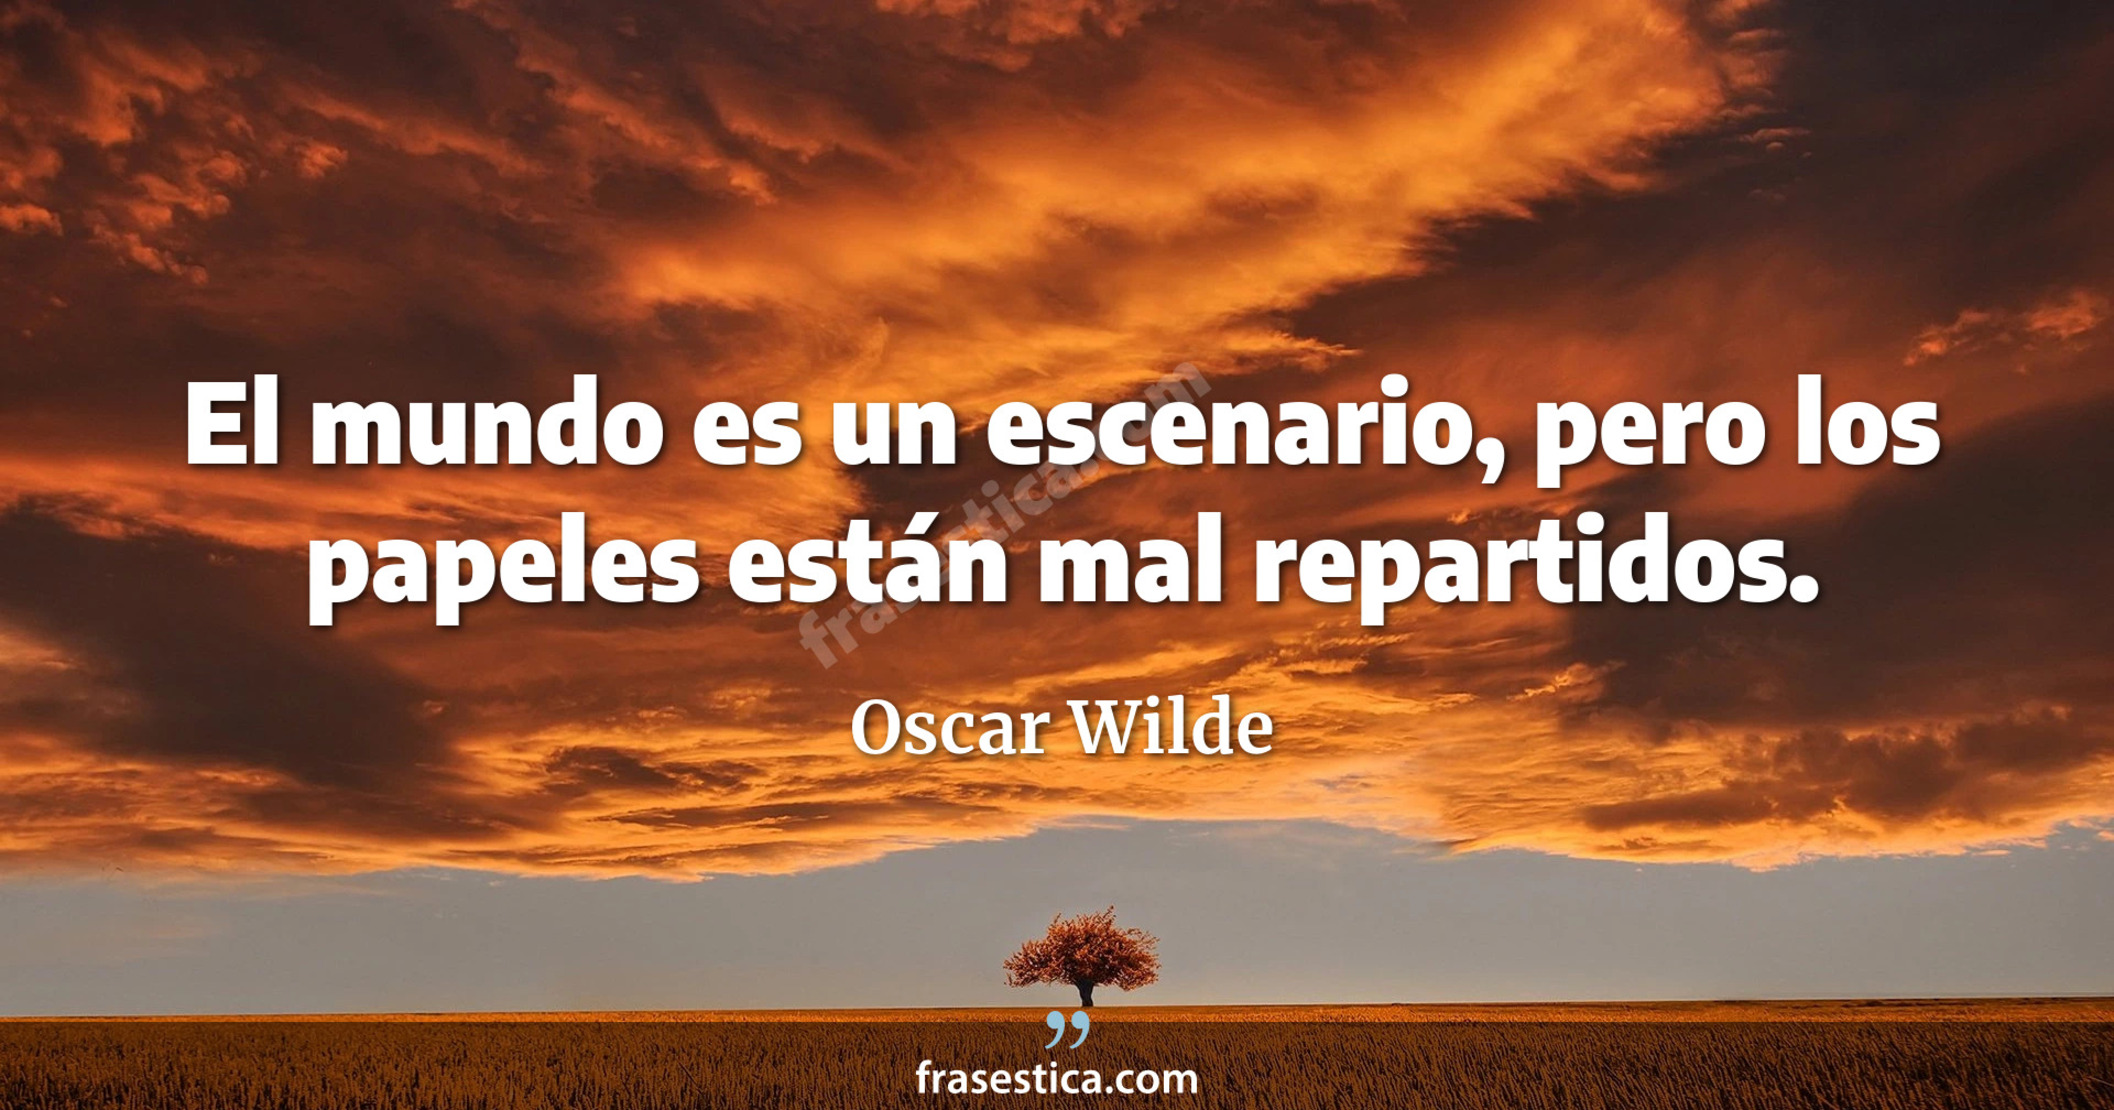 El mundo es un escenario, pero los papeles están mal repartidos. - Oscar Wilde